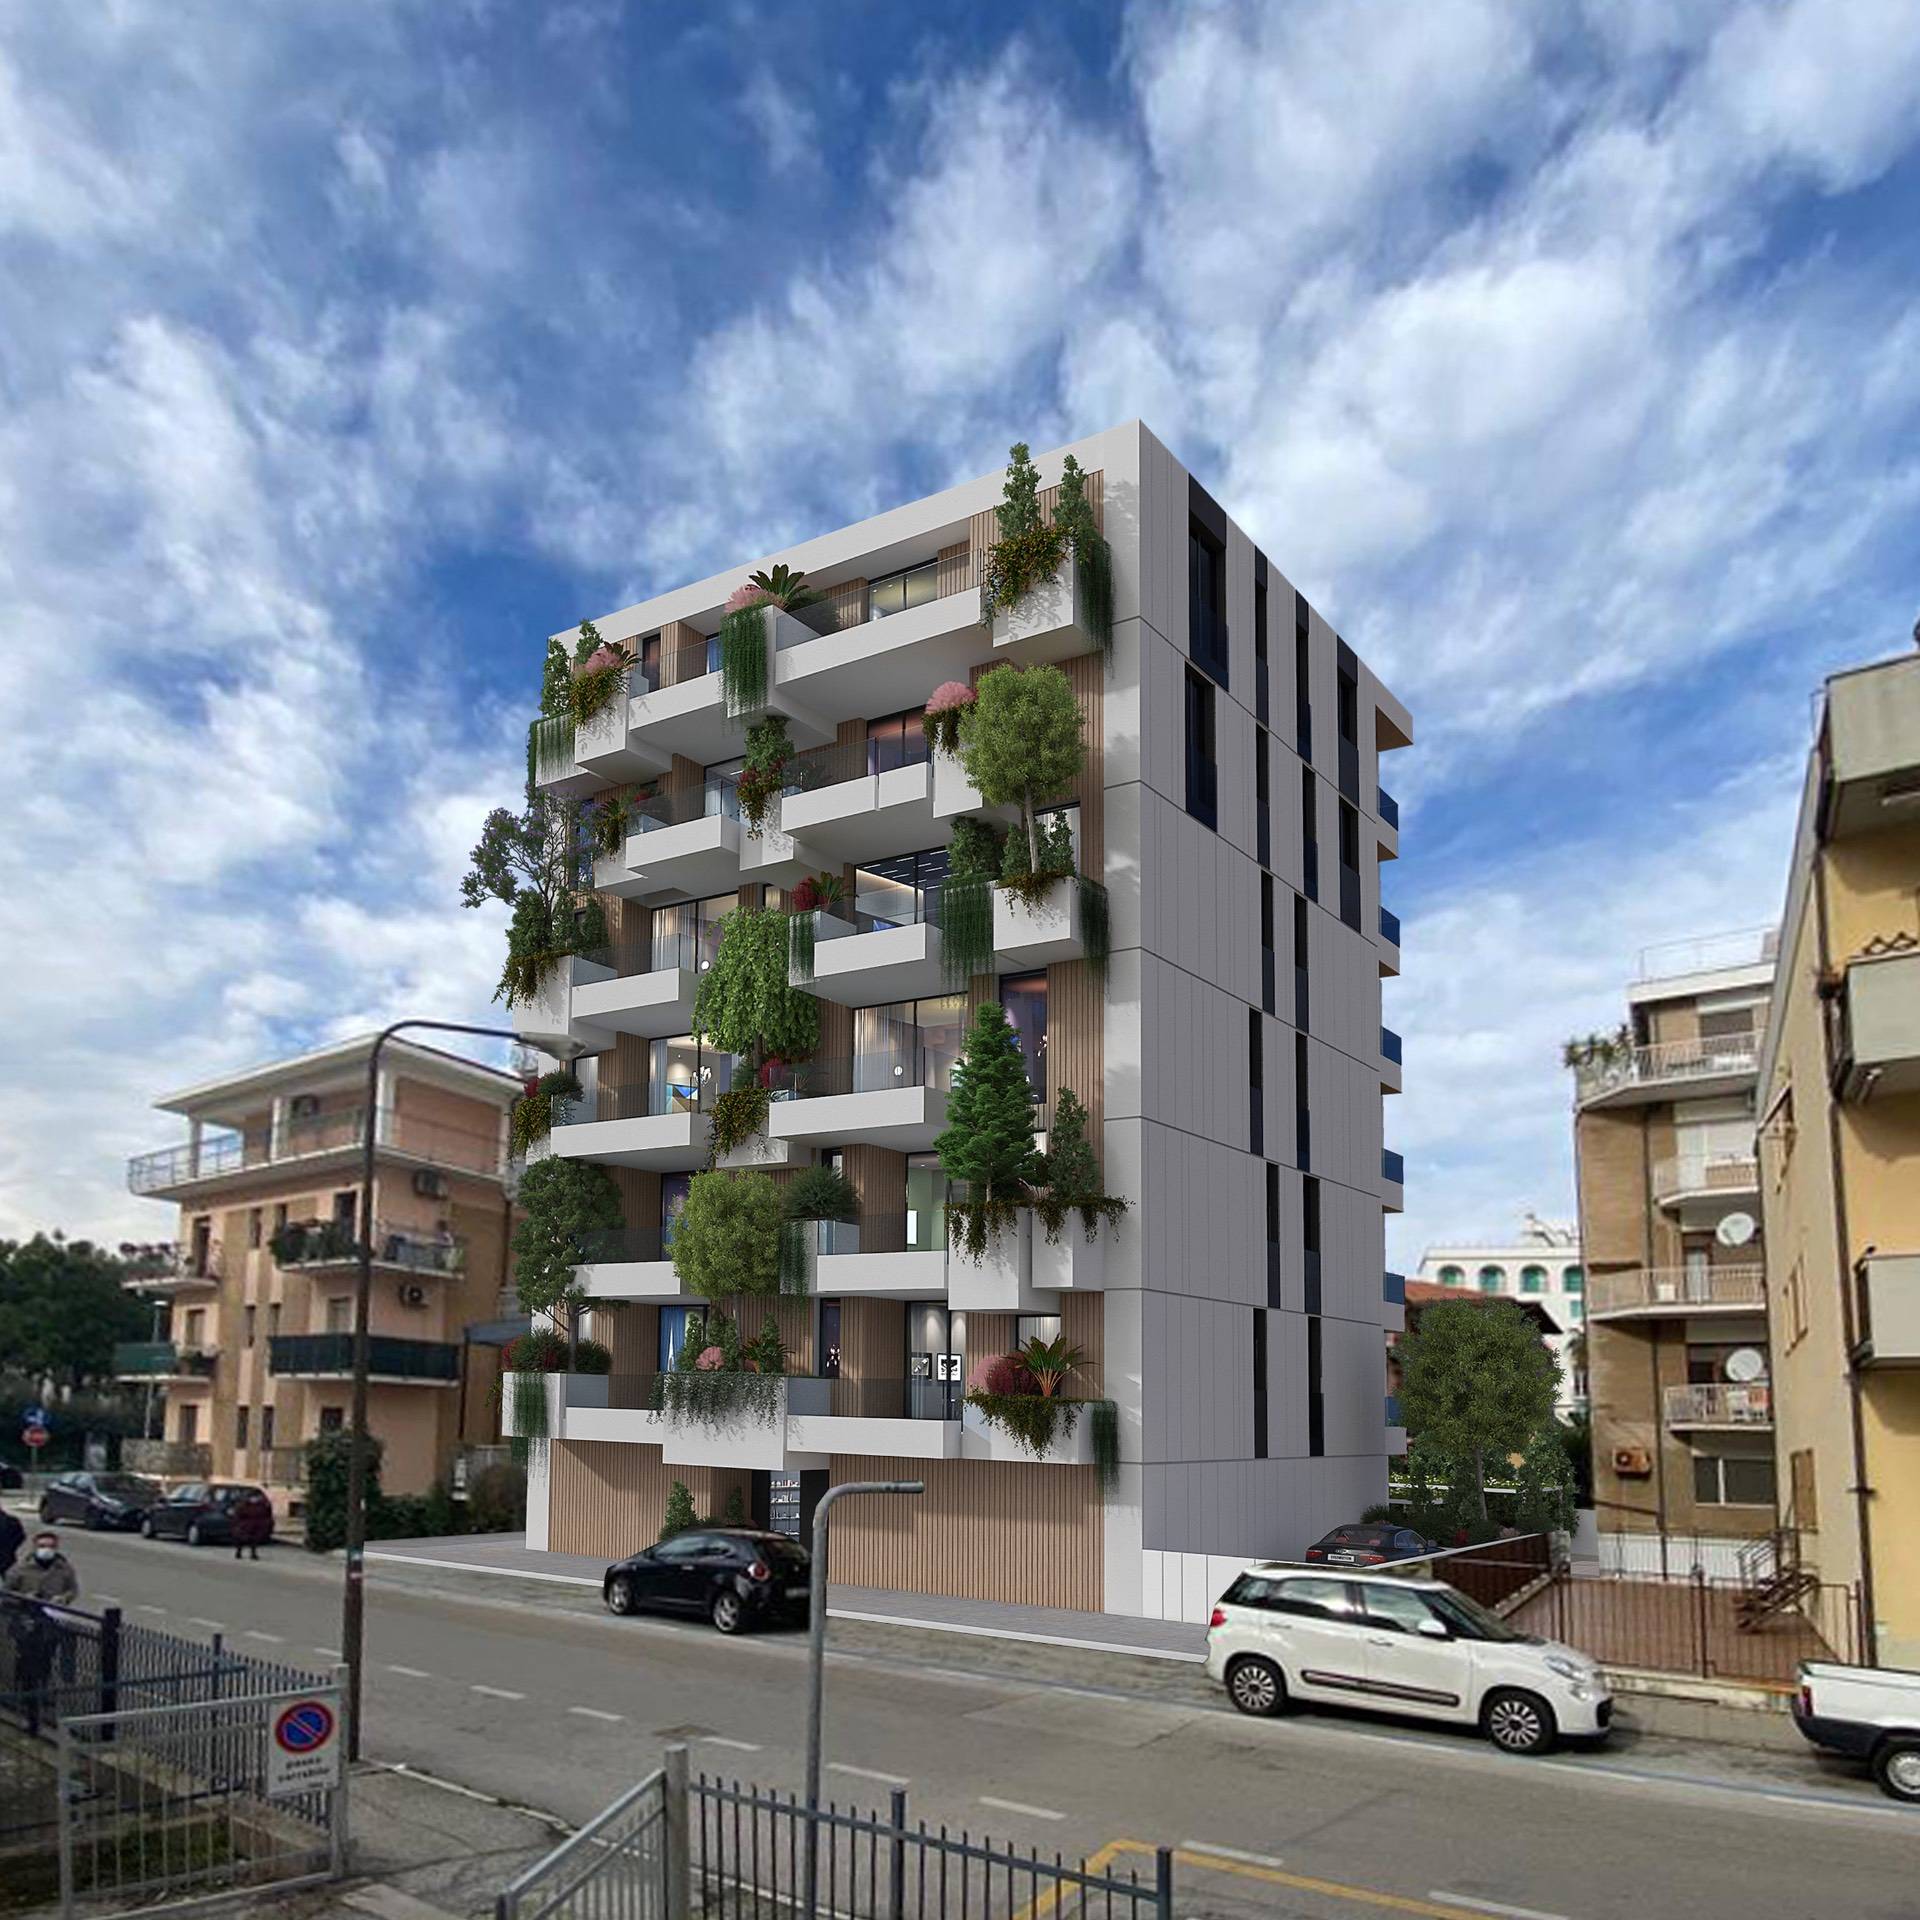 Appartamento in vendita a San Benedetto del Tronto, 2 locali, zona Località: PortoDascolilungomare, prezzo € 300.000 | PortaleAgenzieImmobiliari.it